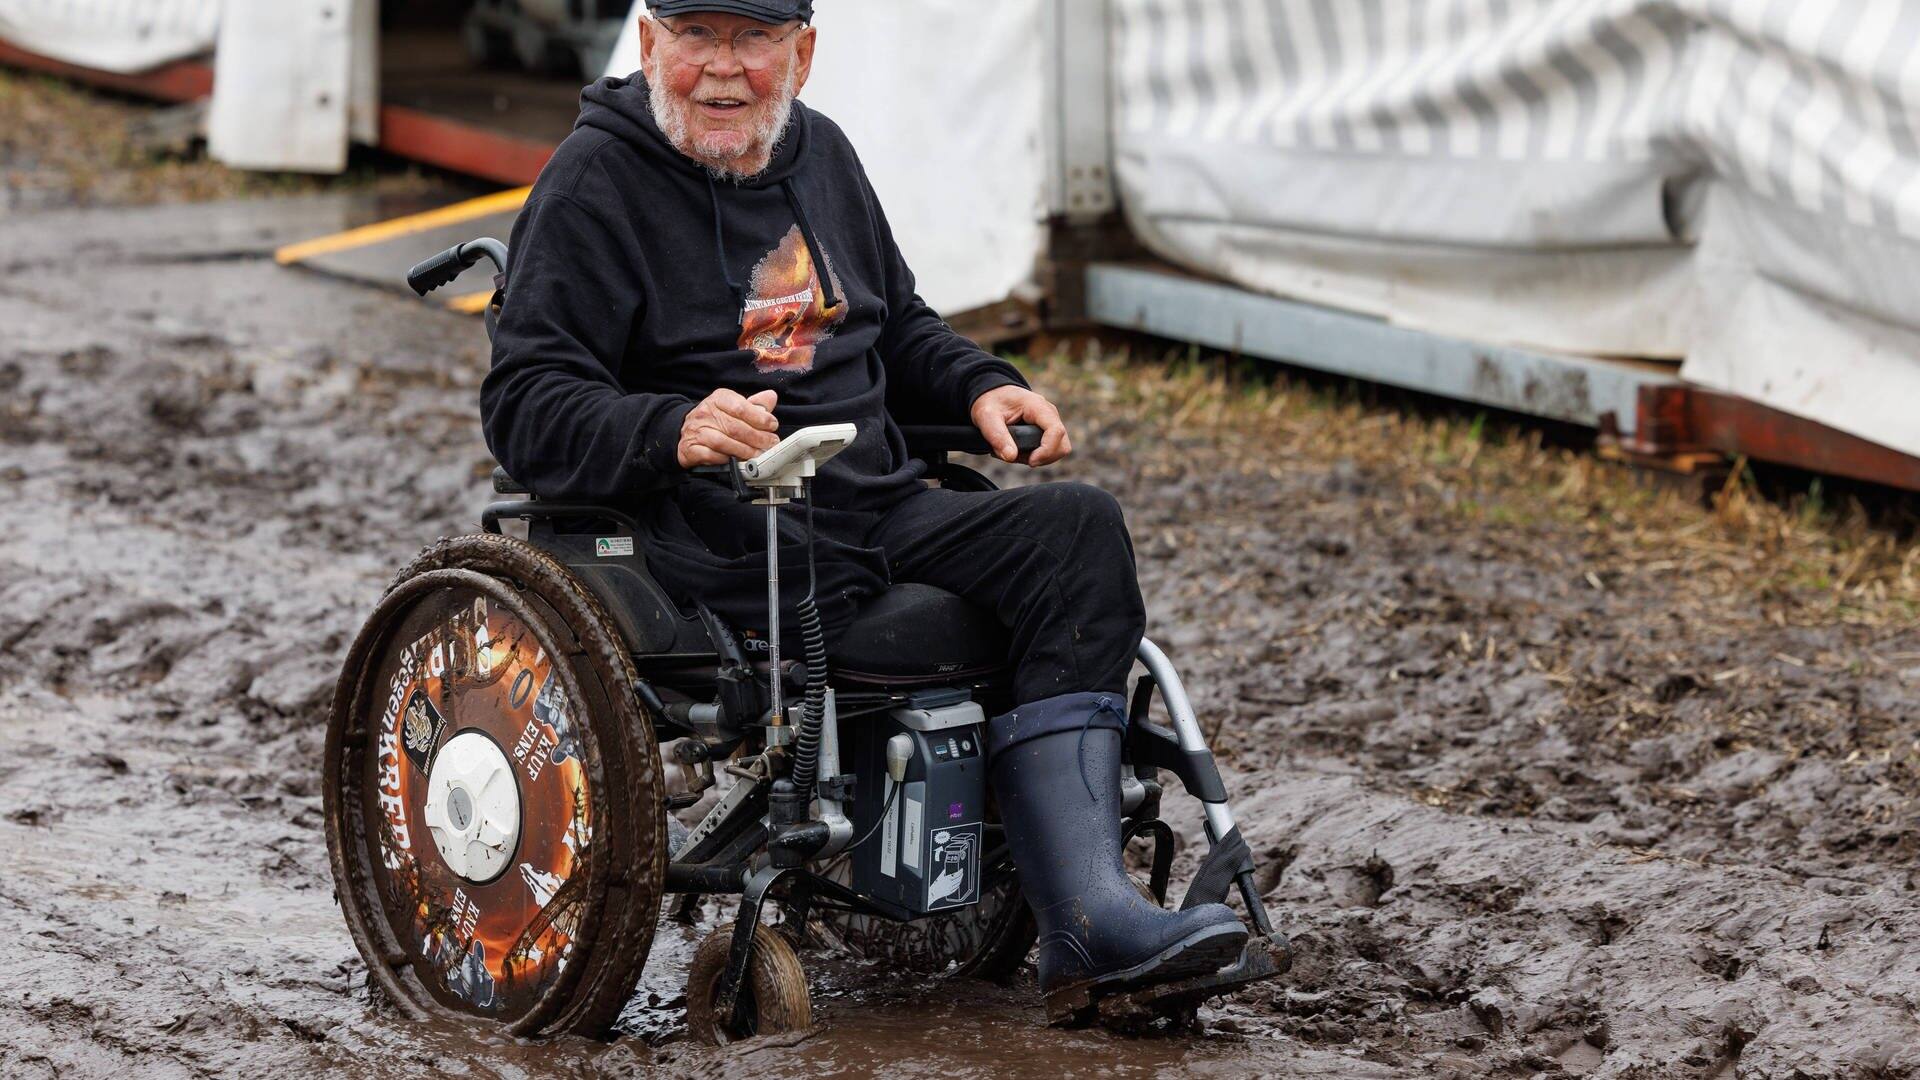 Wacken-Opa Günter, der für seine Charity-Organisation „Lautstark gegen den Krebs“ sammelt, lässt sich trotz Rollstuhl nicht vom Matsch aufhalten. (Foto: IMAGO, IMAGO/Dirk Jacobs)